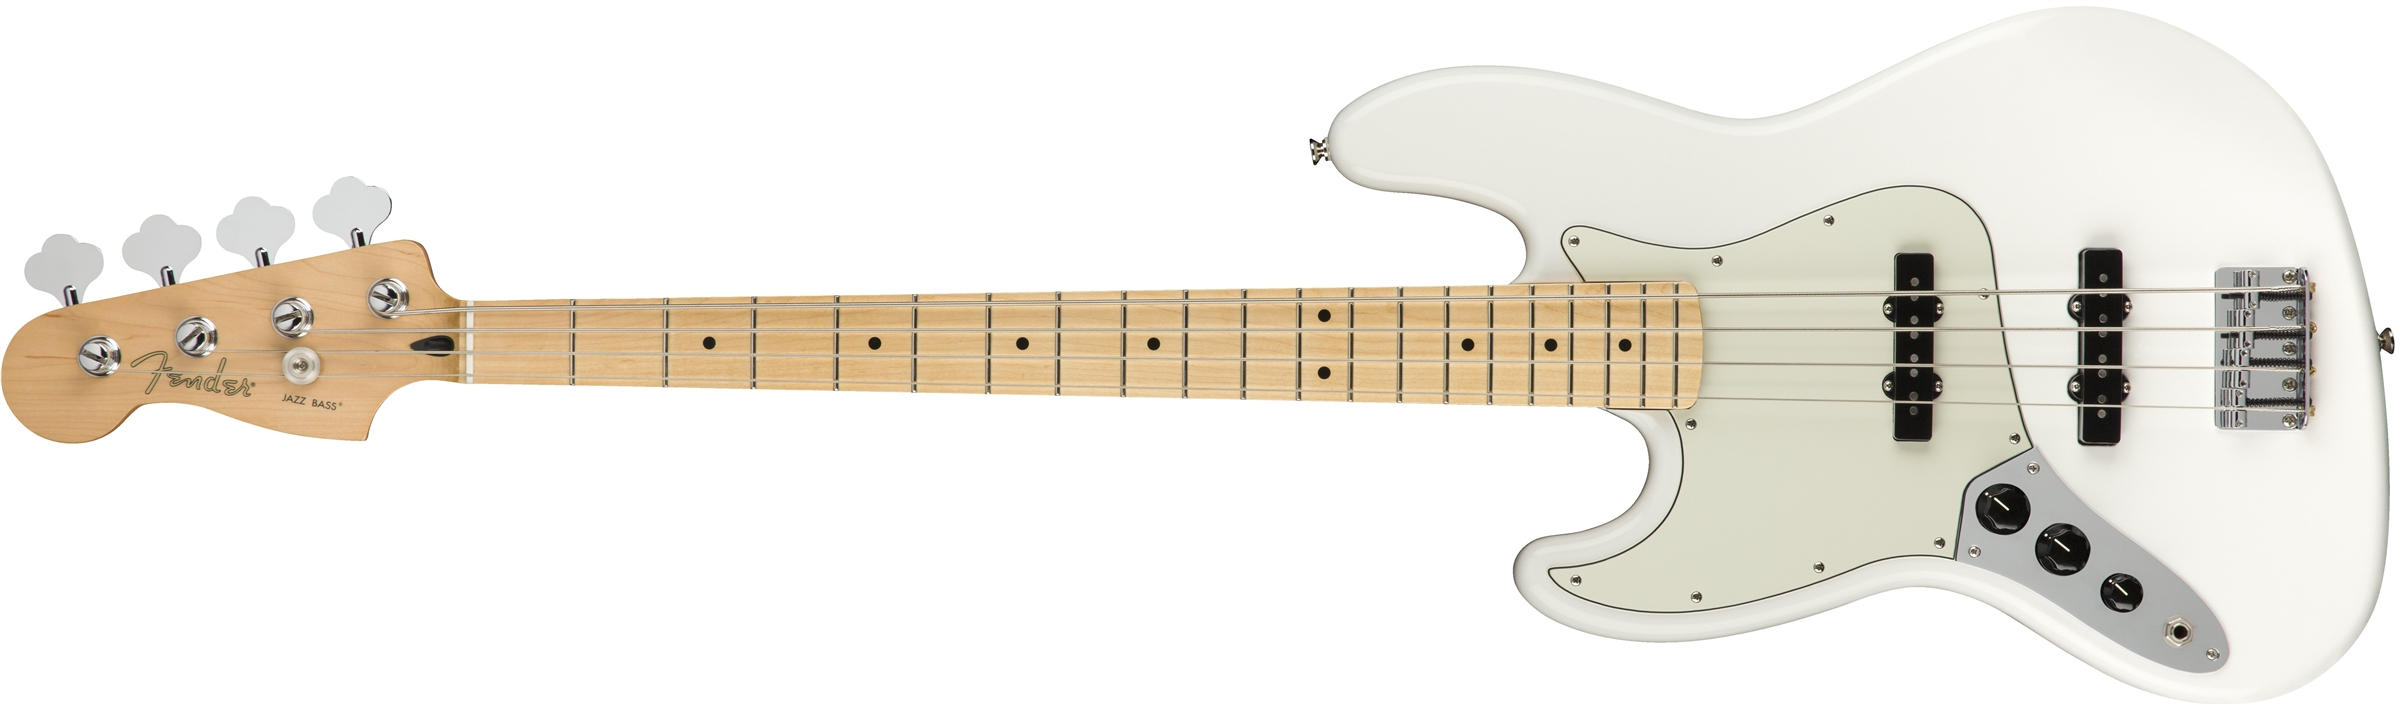 Fender Playerシリーズ ジャズベースPlayer Jazz Bass Left-Handed Polar White (Maple